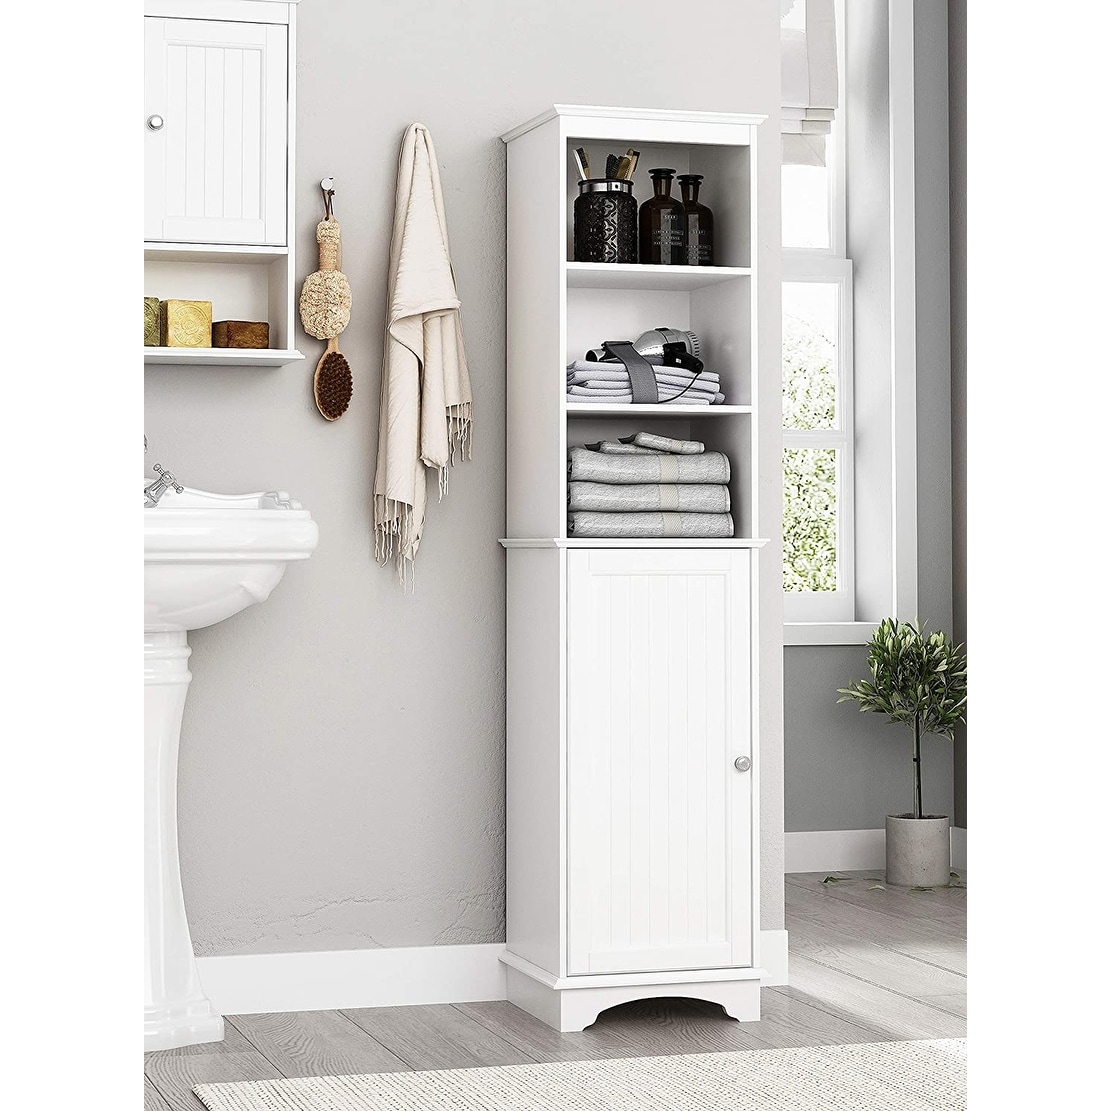 Details about   3 Tier Wooden Bathroom Cabinet Storage Rack Free Standing Shelf Organizer 